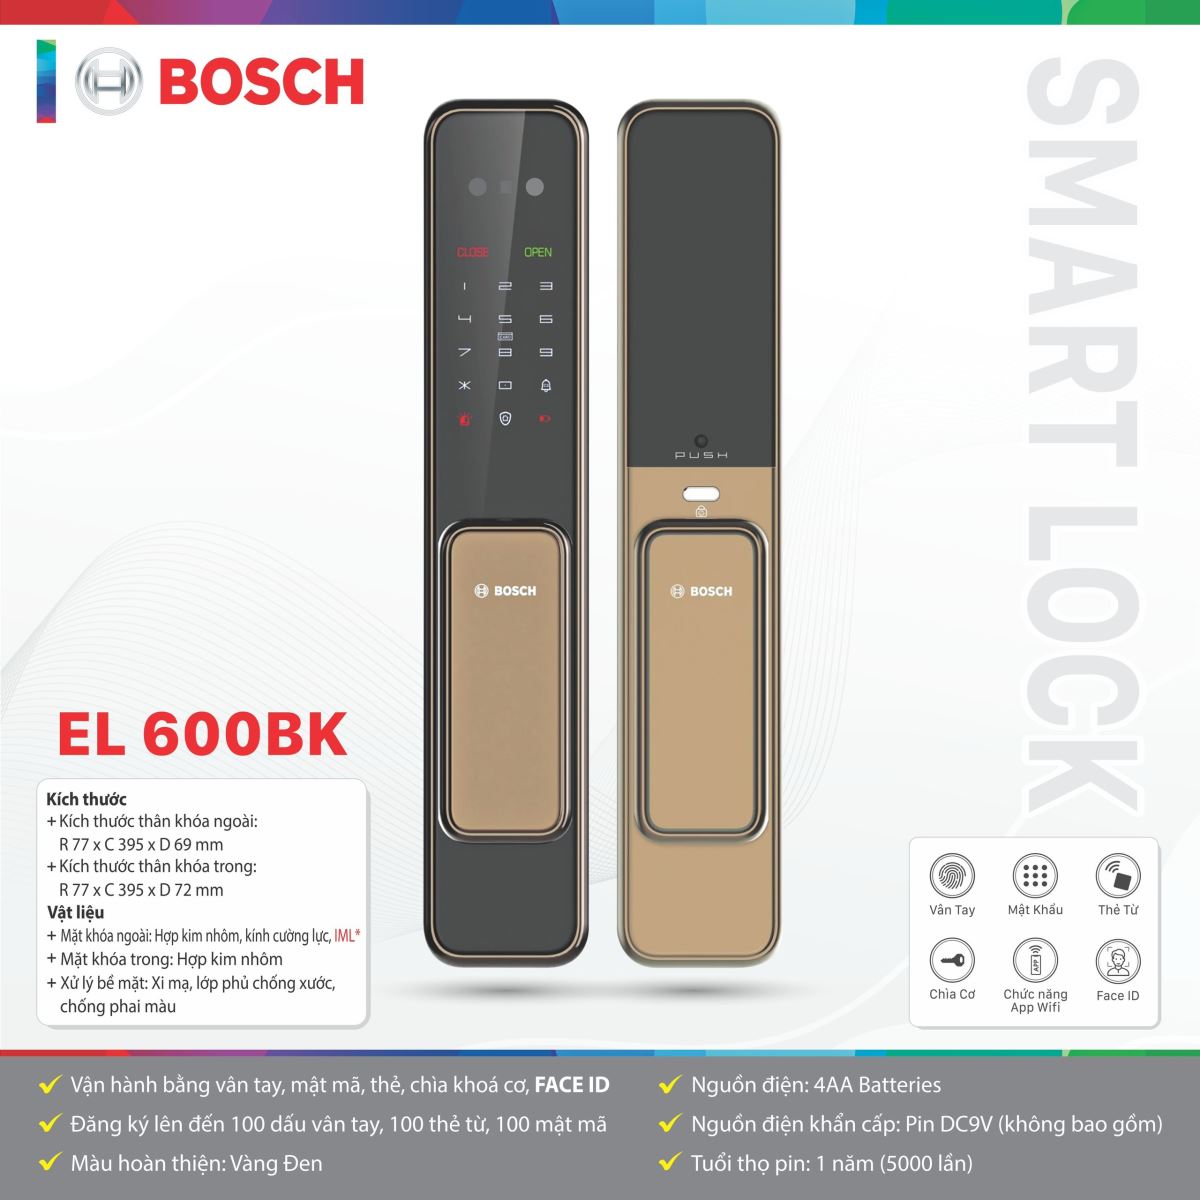 Khóa cửa Bosch EL 600BK Vàng đen